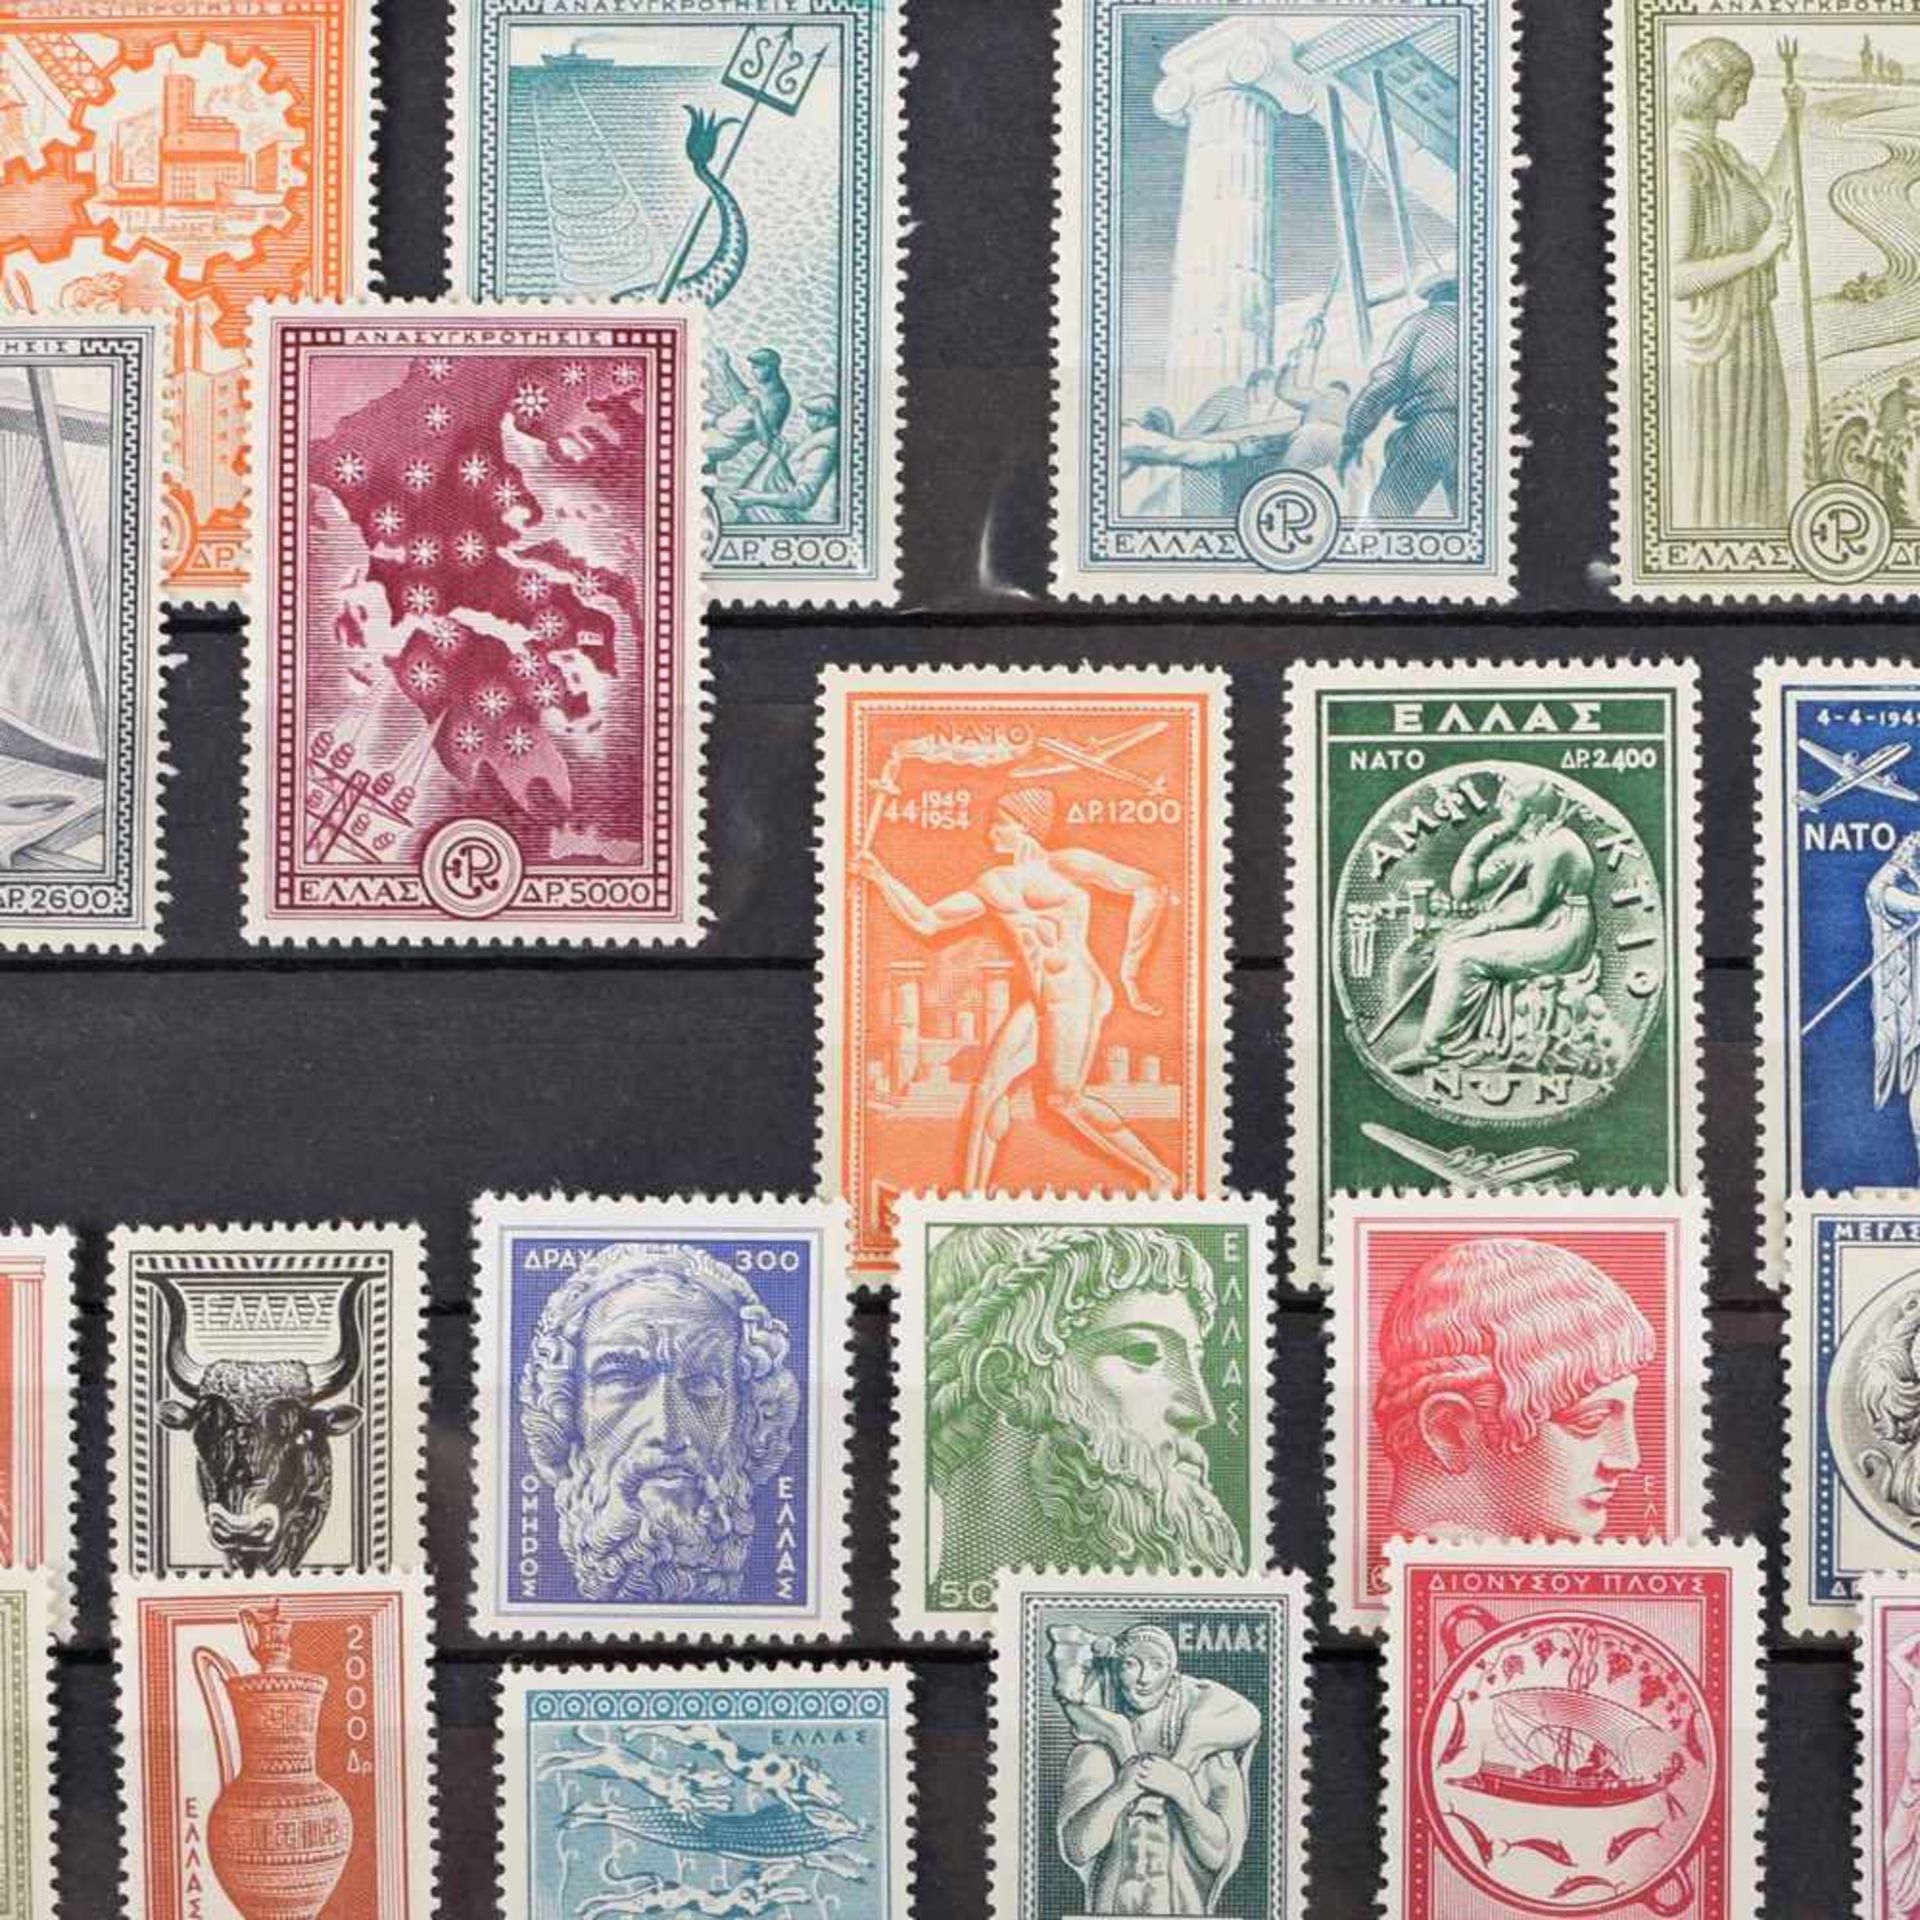 Briefmarken Griechenland postfrisch sauber, 1 x Sonderausgabe Wiederaufbau der Industrie und